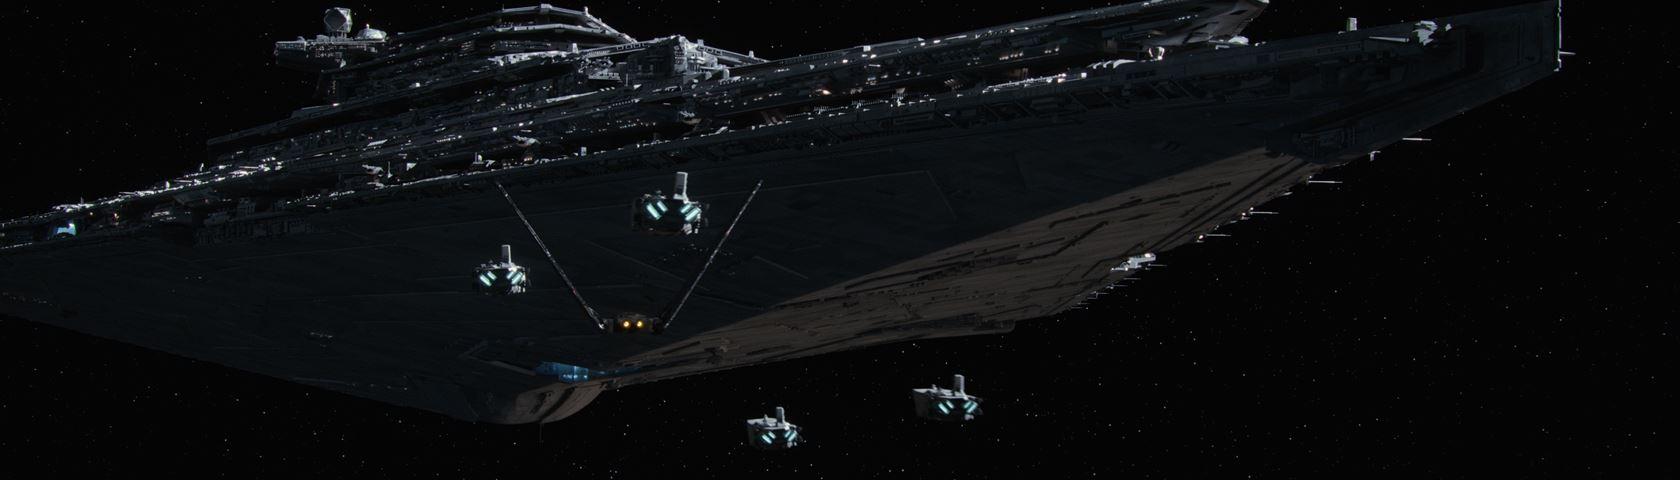 Star Wars 7 Star Ship • Image • WallpaperFusion